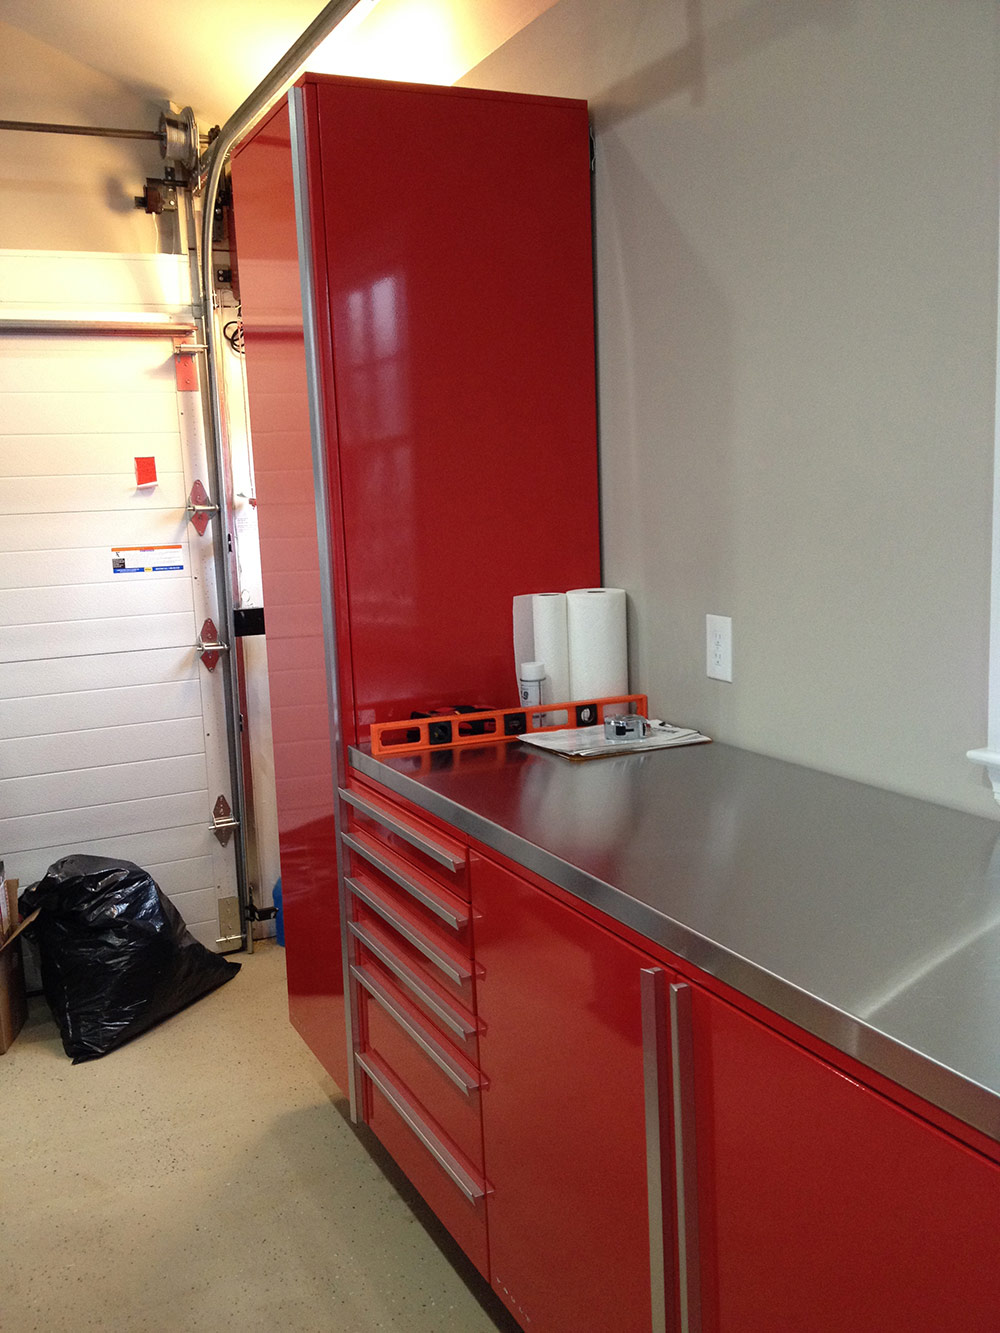 Designer Series Garage Cabinets by VAULT